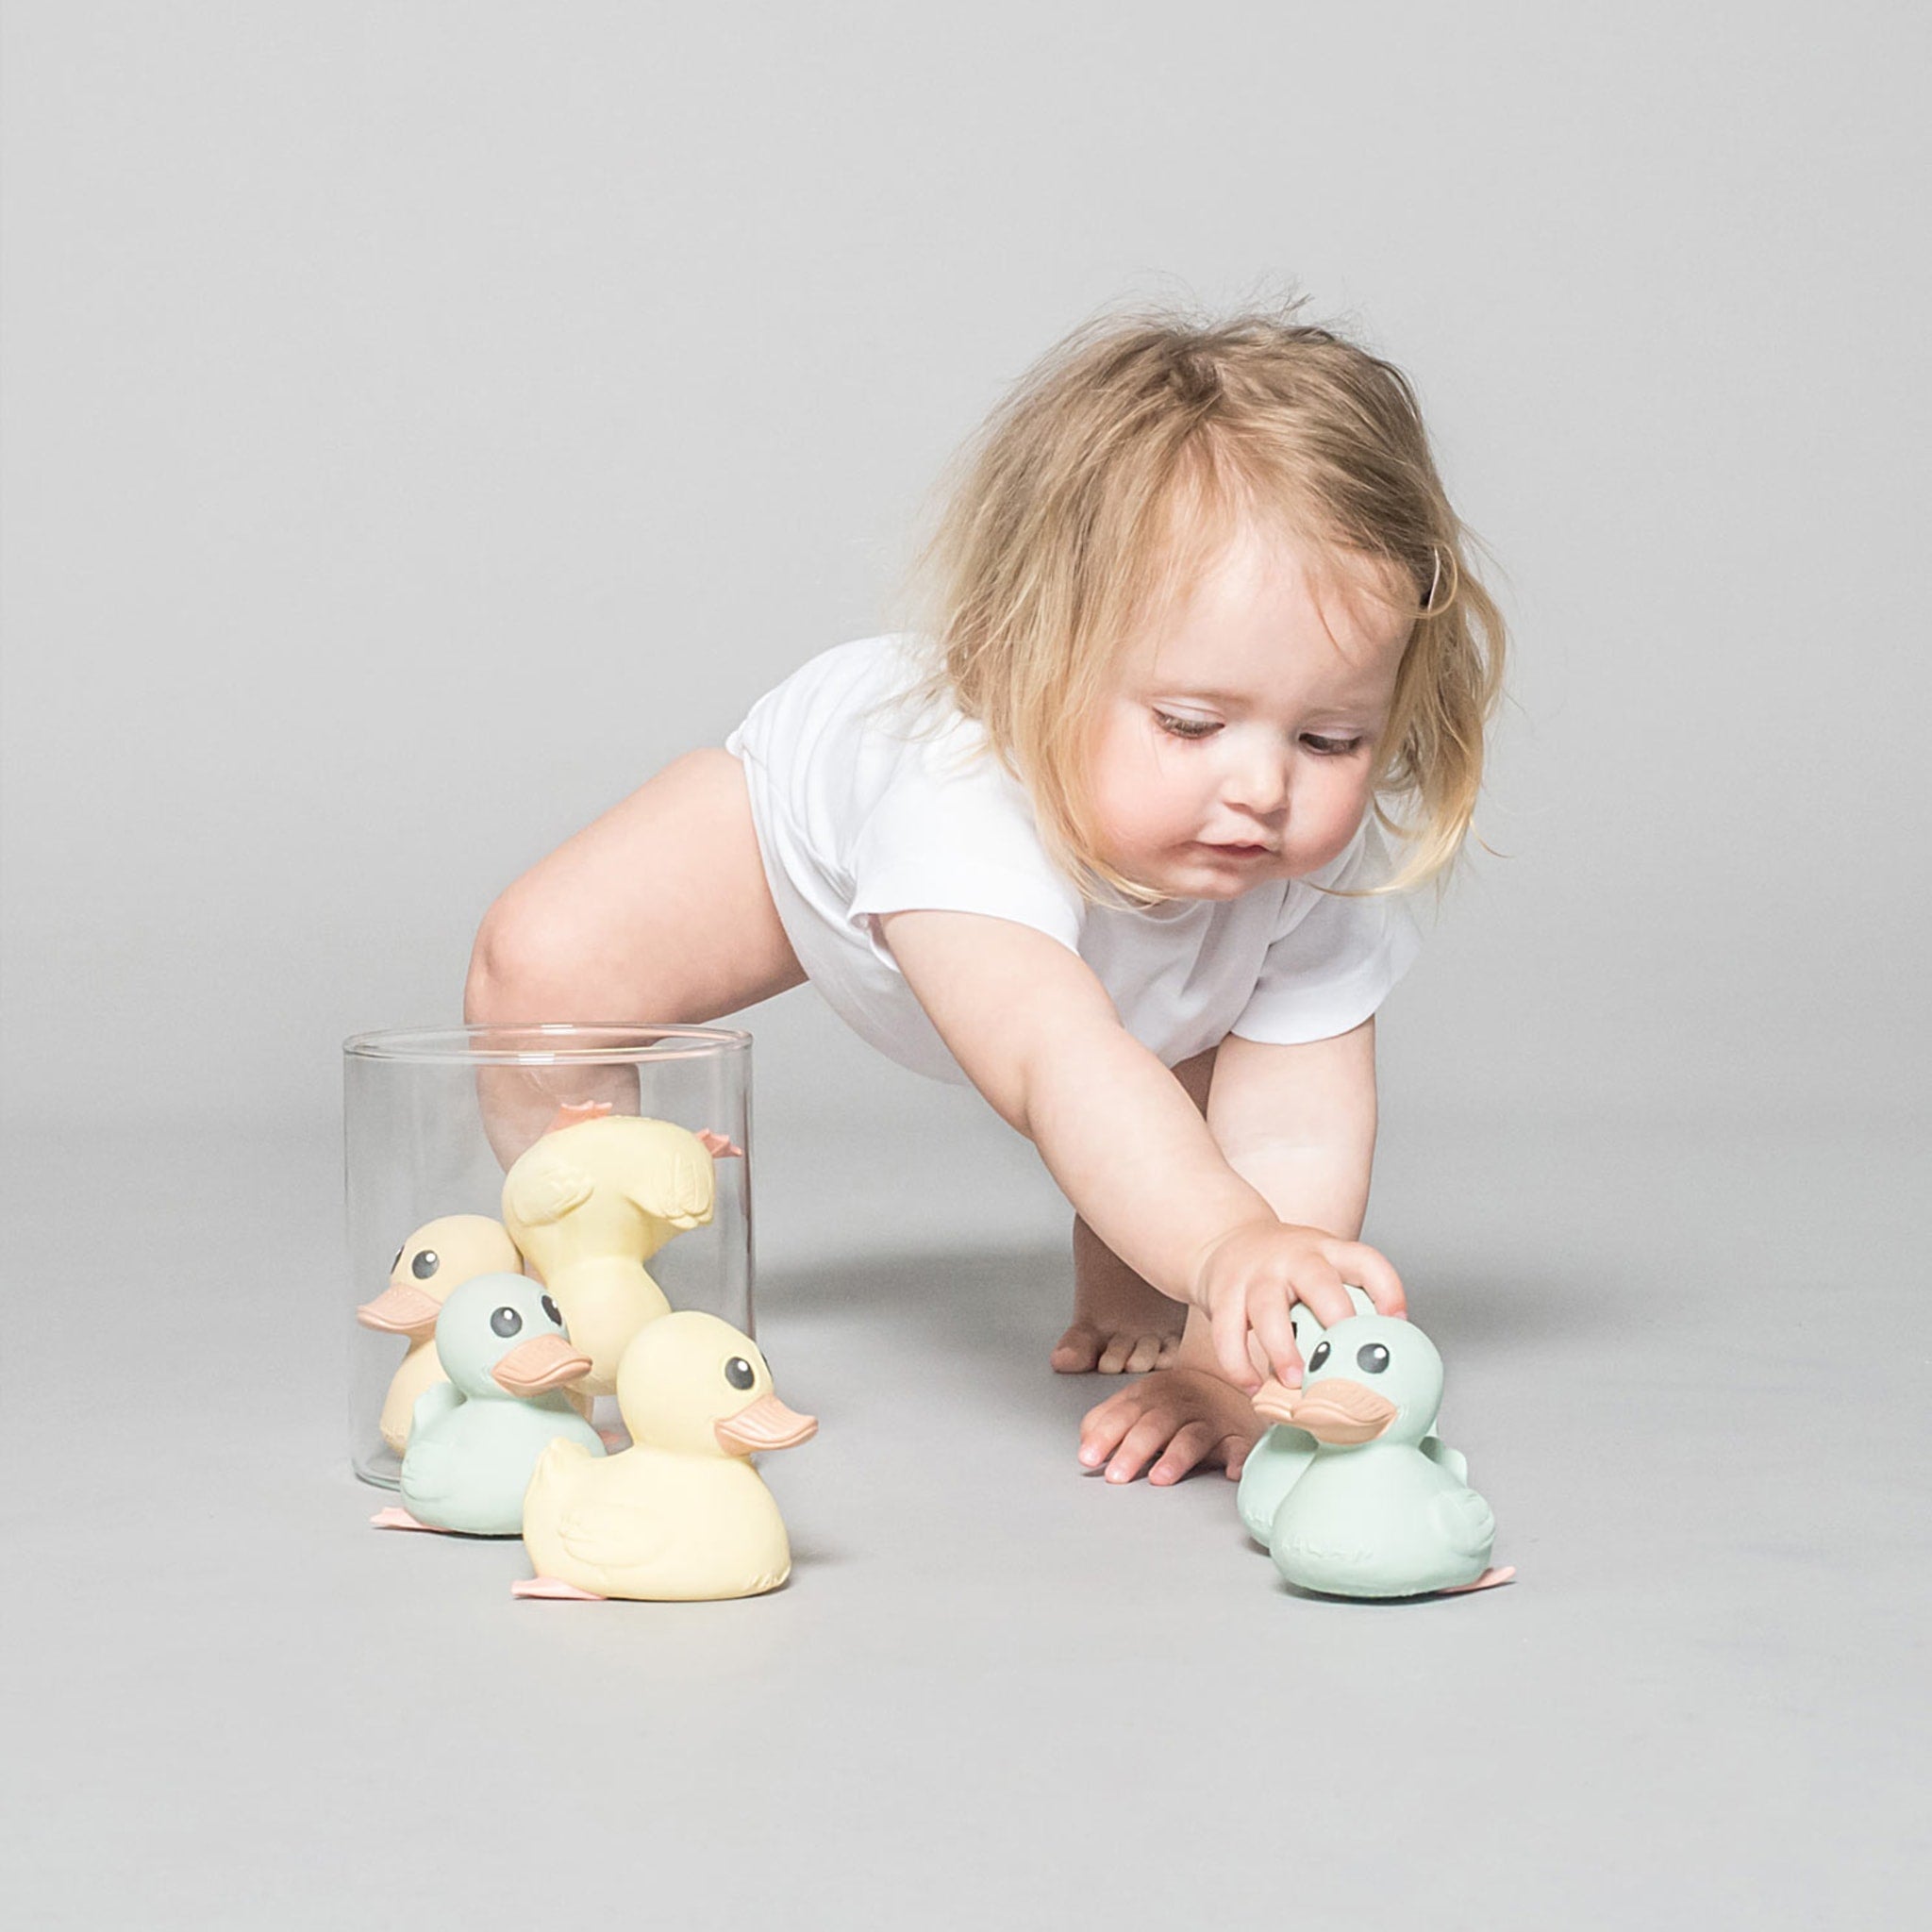 HEVEA Kawan Mini pato de goma – Juguete de baño de goma 100% natural para  bebé, respetuoso con el medio ambiente, perfecto para jugar, dentición y